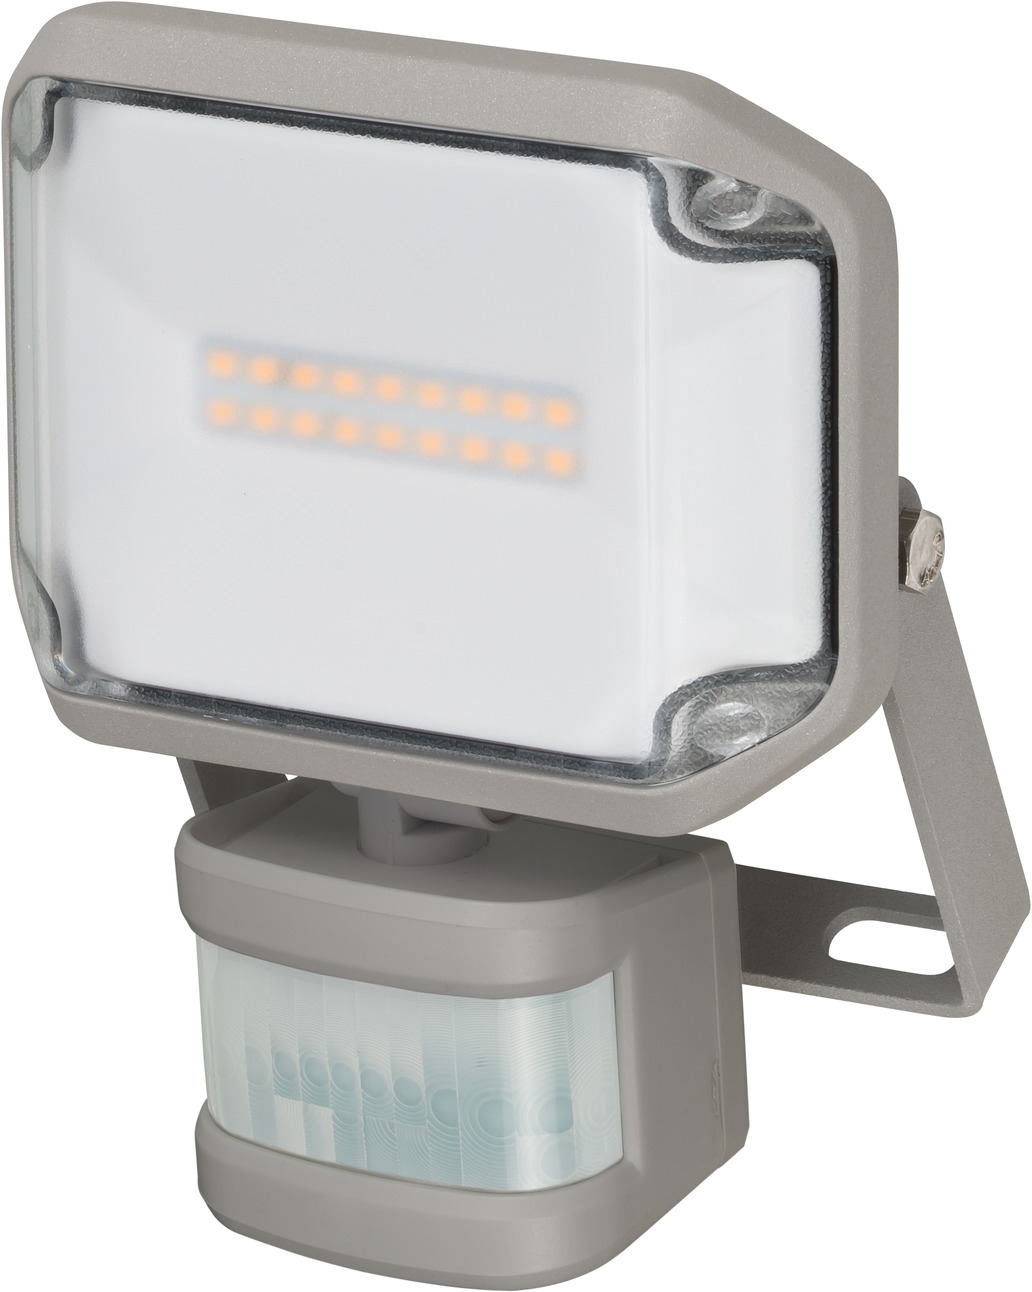 BRENNENSTUHL LED Außen-Strahler Fluter JARO 1050 zur Wandmontage IP65 /#84400006 